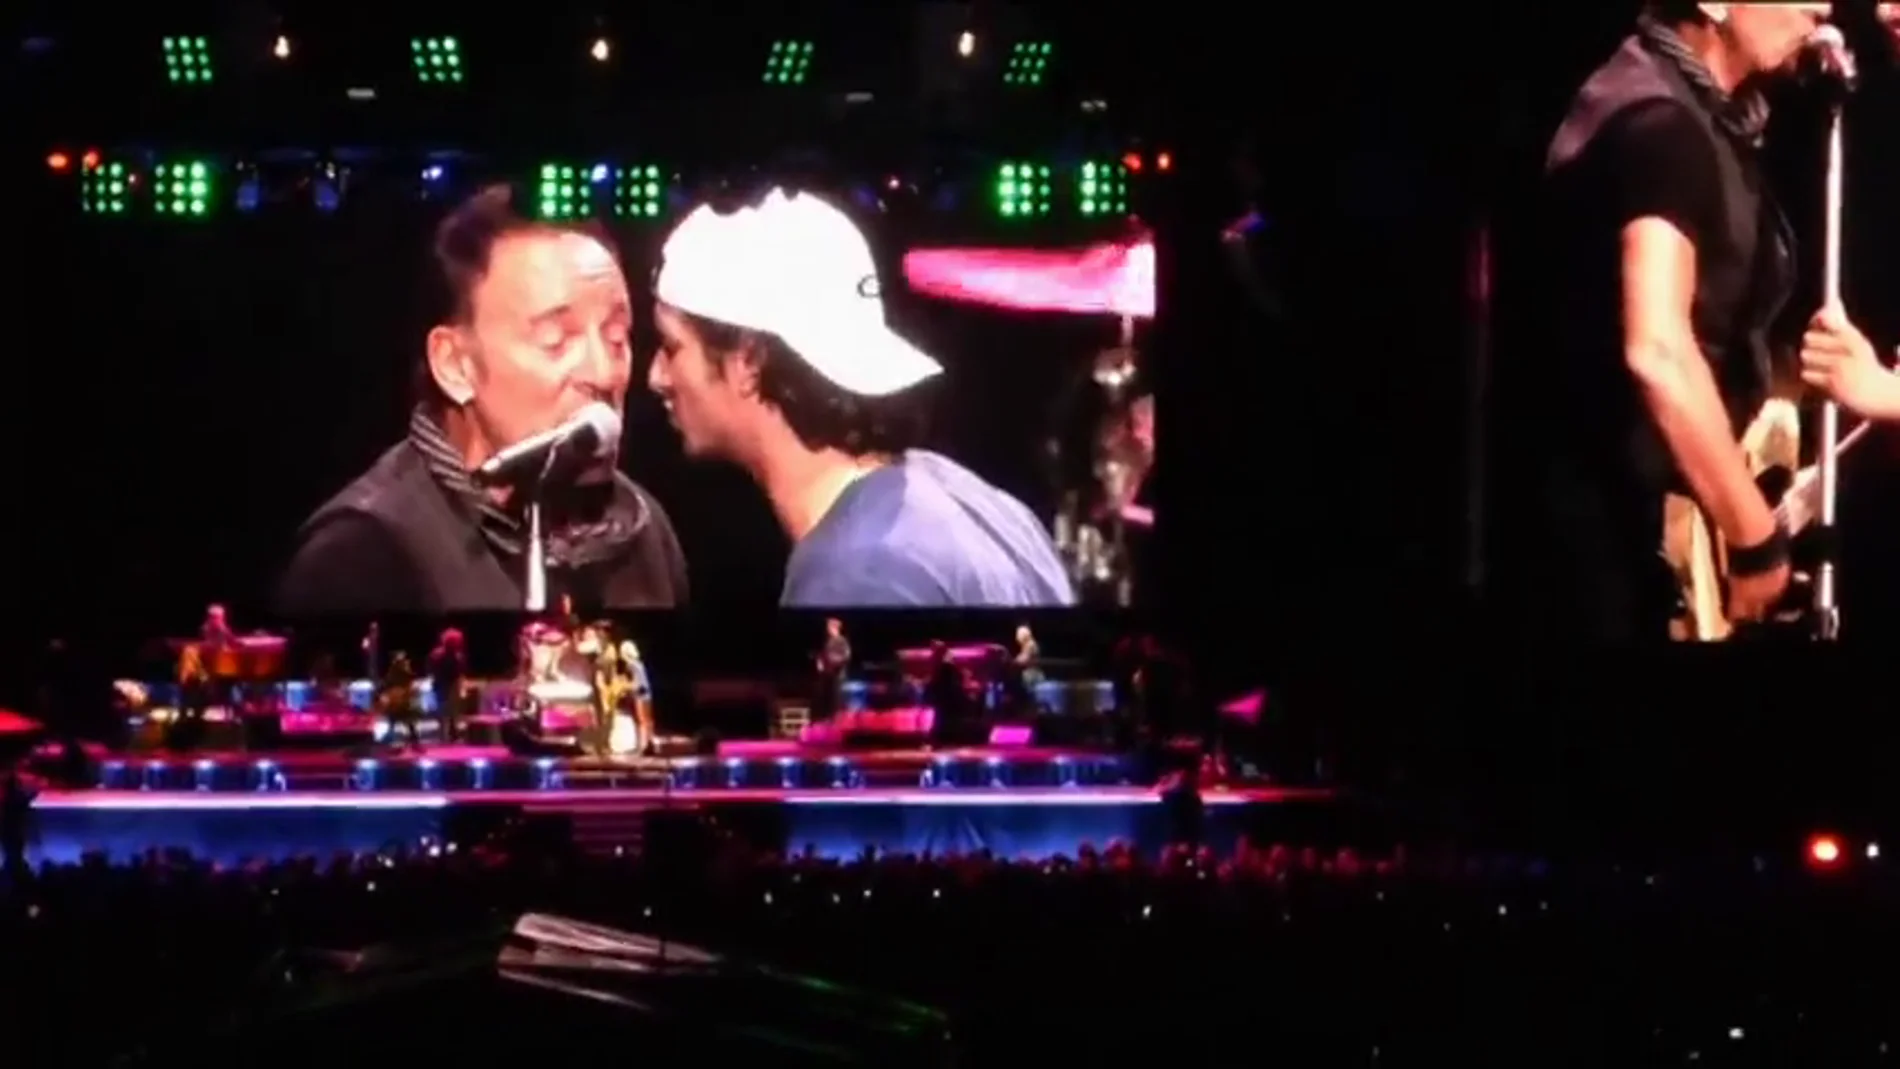 Frame 117.508212 de: Bruce Springsteen sube al escenario a un fan que le pidió la canción 'Santa Claus is coming to town' y cantan juntos